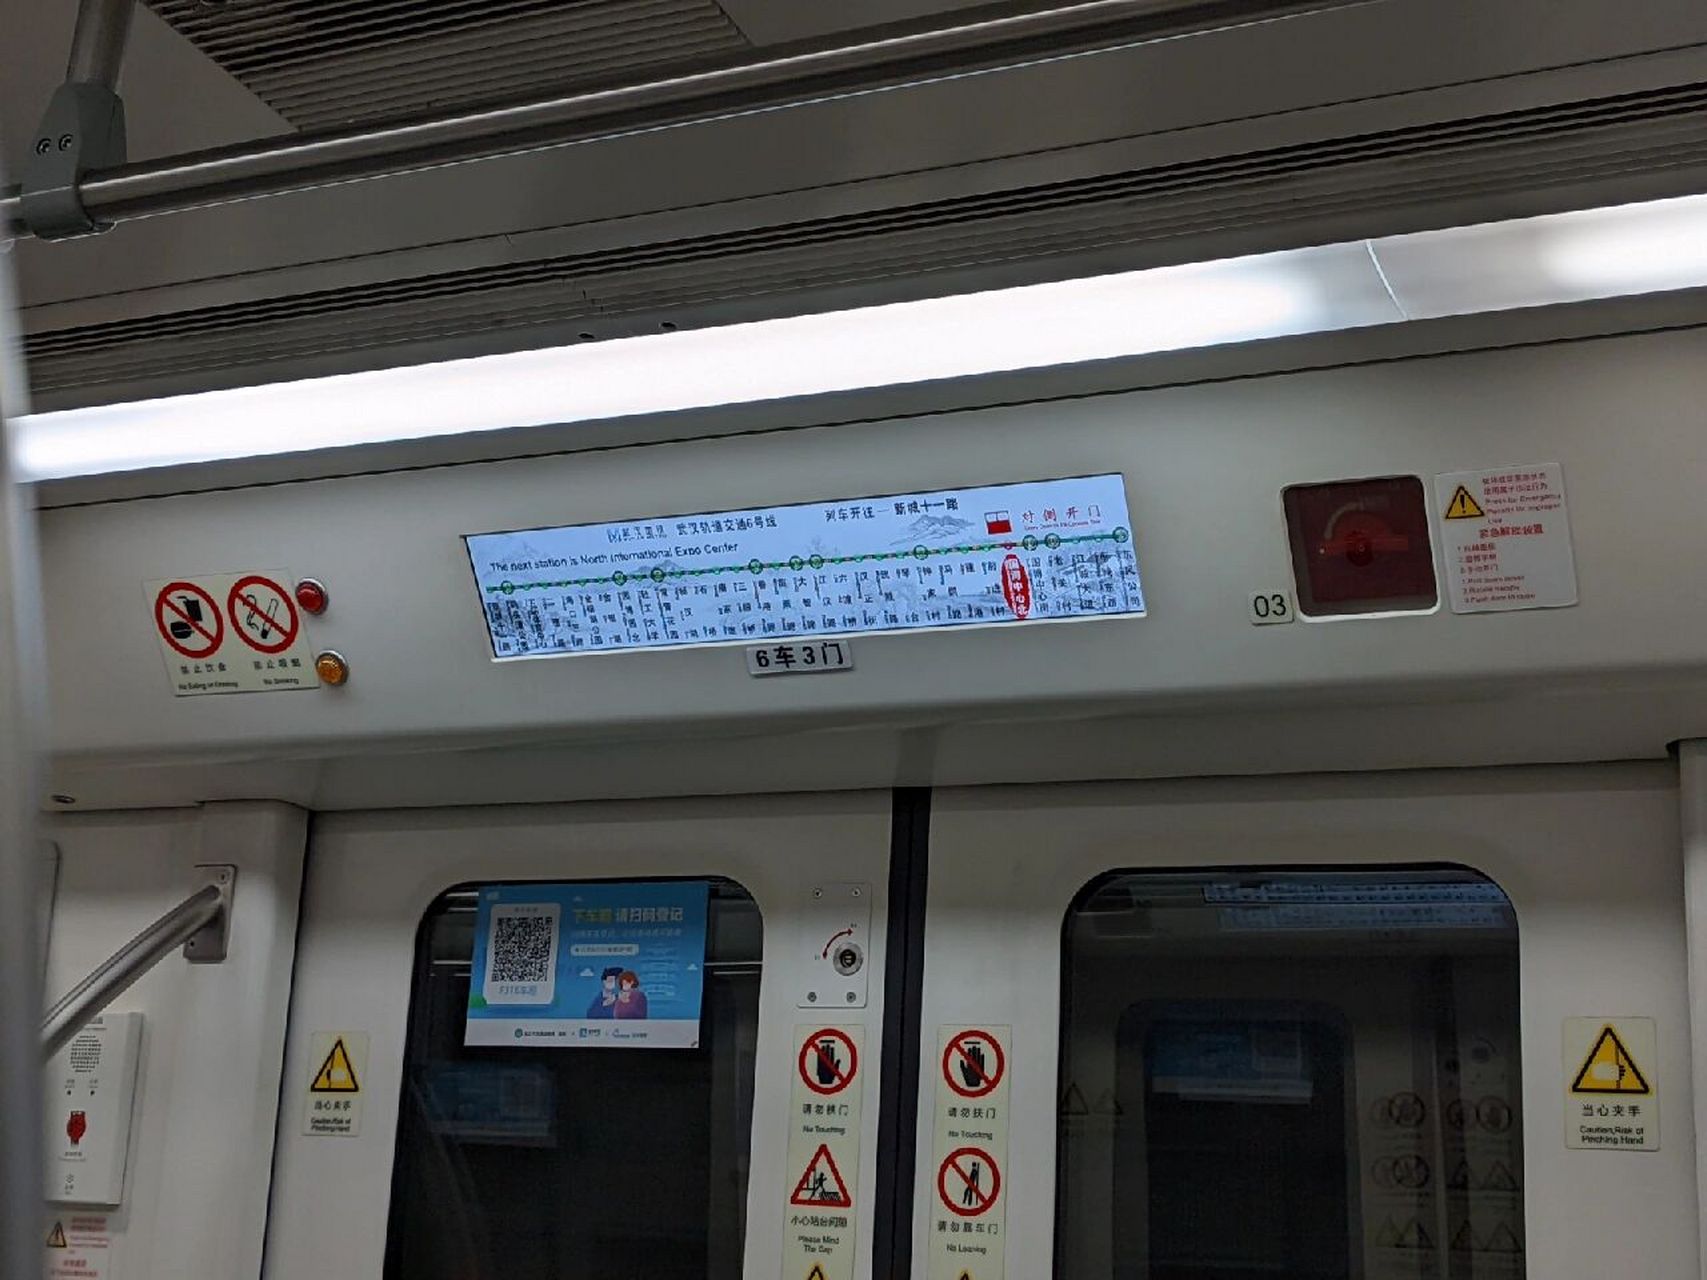 武汉地铁6号线博艺路图片